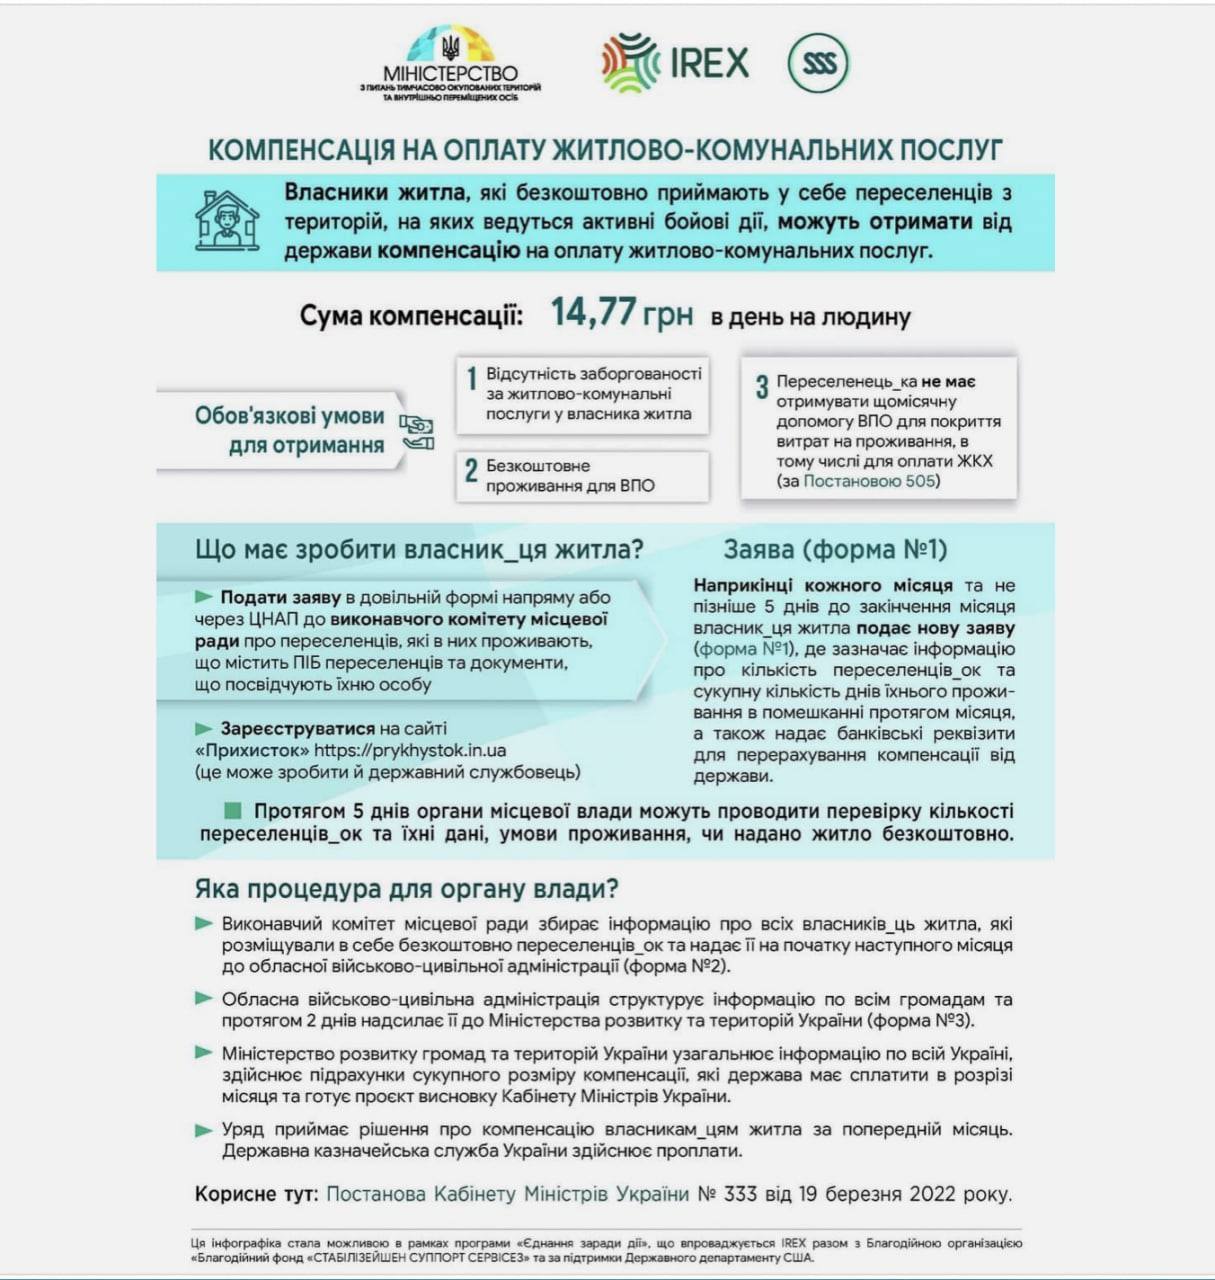 Министерство реинтеграции напомнило о том, что украинцы, бесплатно приютившие переселенцев, могут получить компенсацию за коммуналку